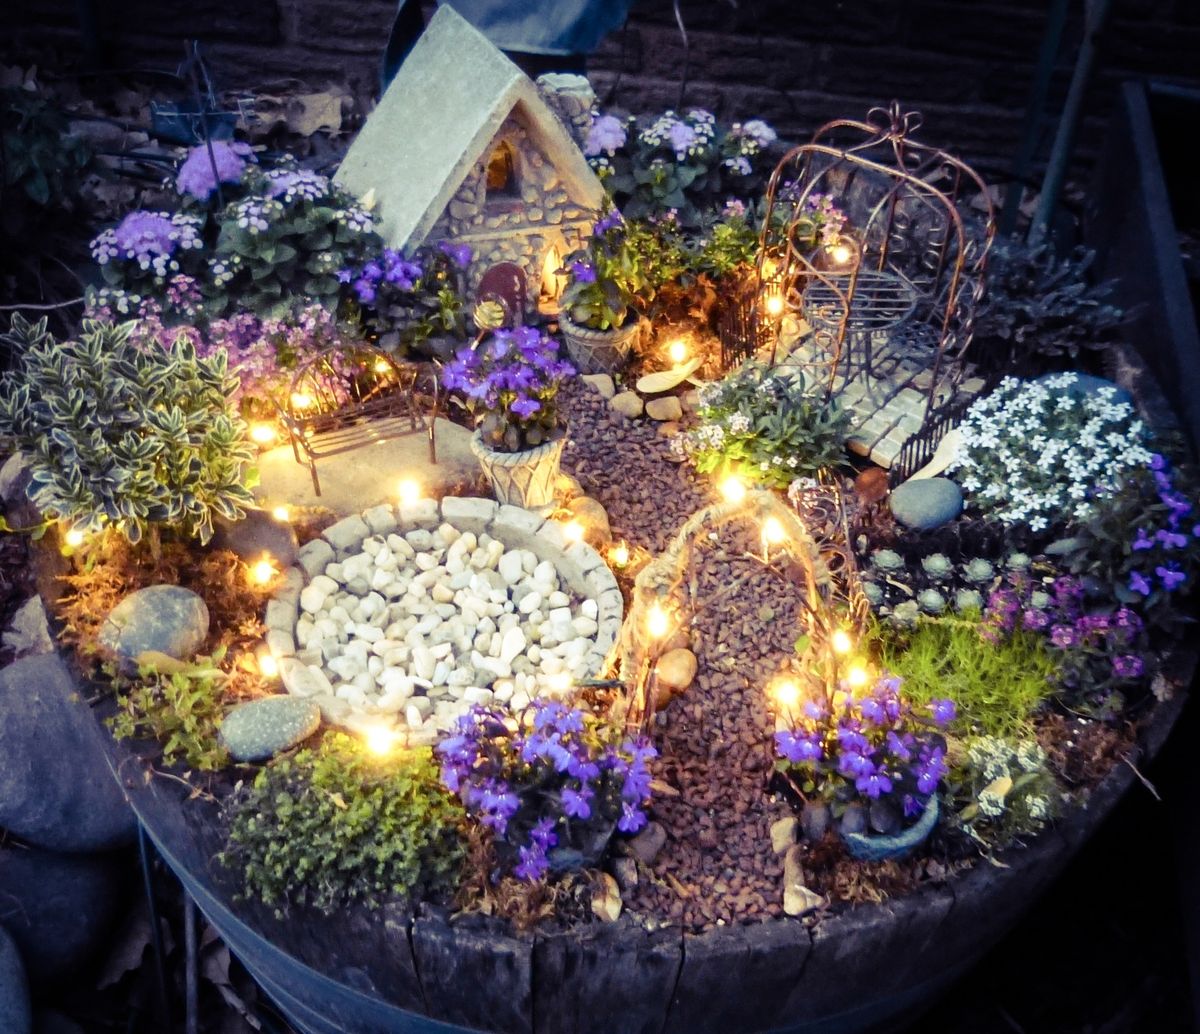 Fairy Garden Ideas: Some Enchanted Evening